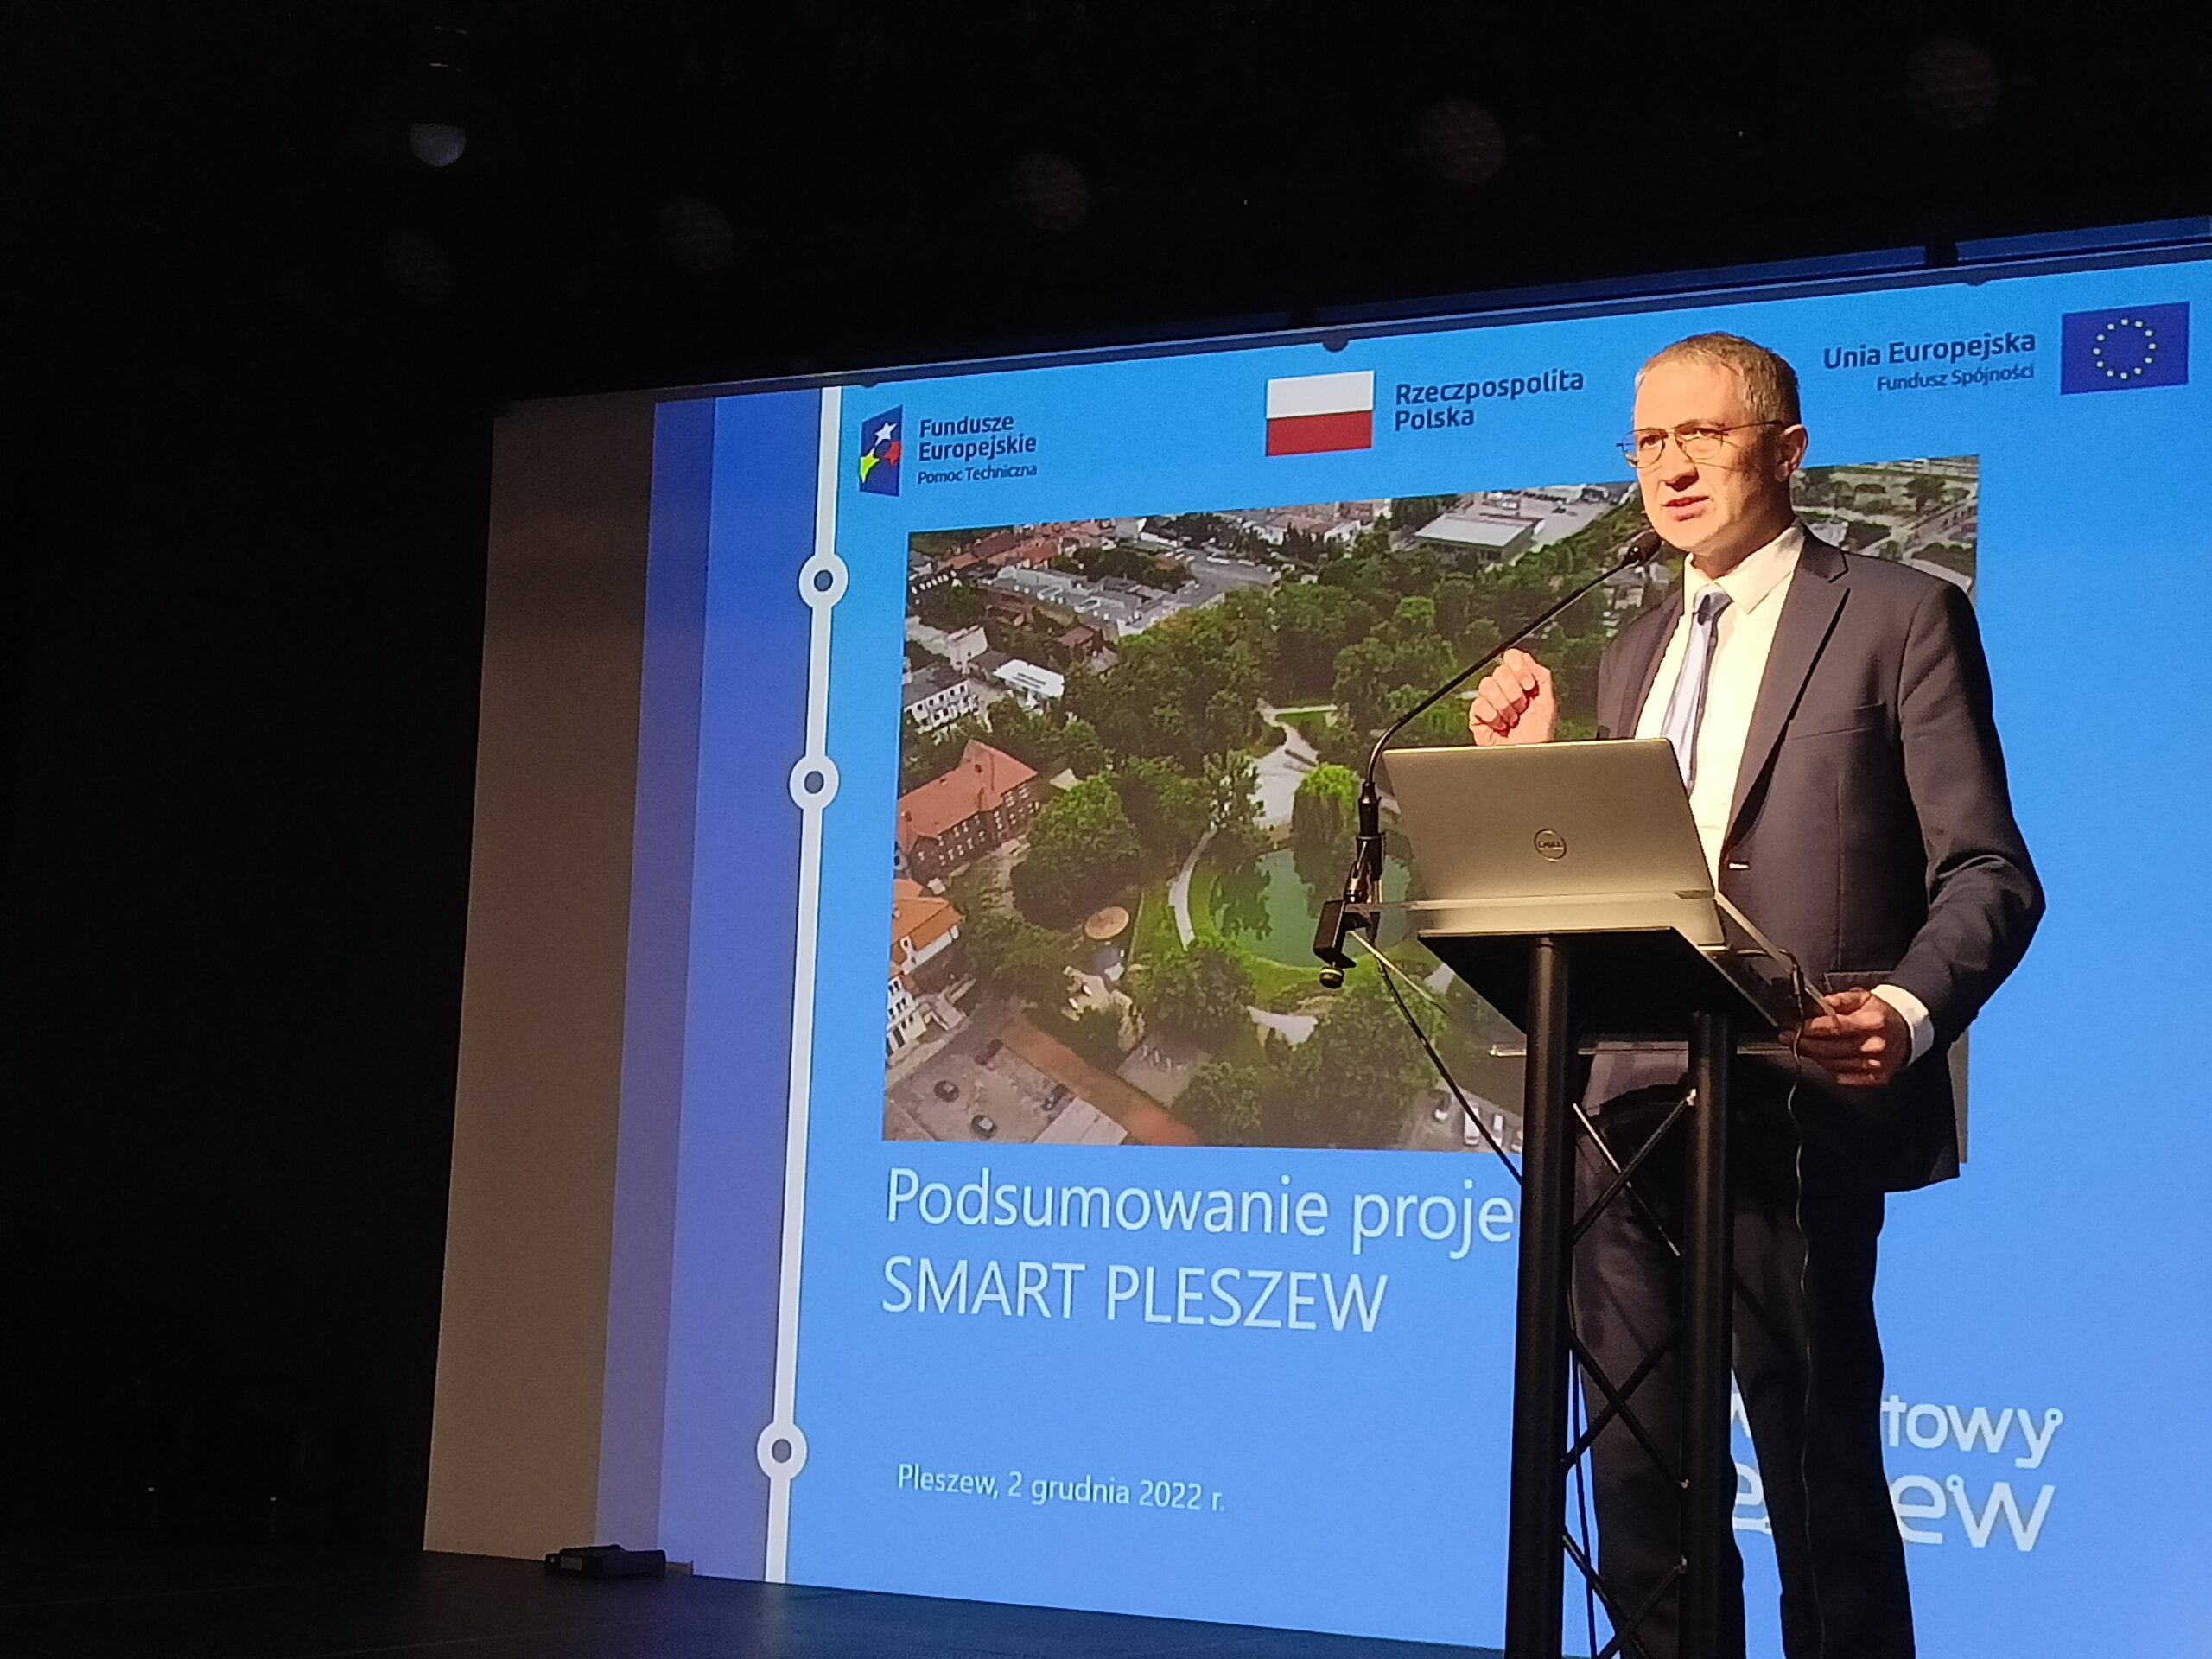 Przemówienie burmistrza MiG Pleszew Arkadiusza Ptaka podczas konferencji podsumowujacej projekt Smart Pleszew w Zajezdni Kultury w Pleszewie